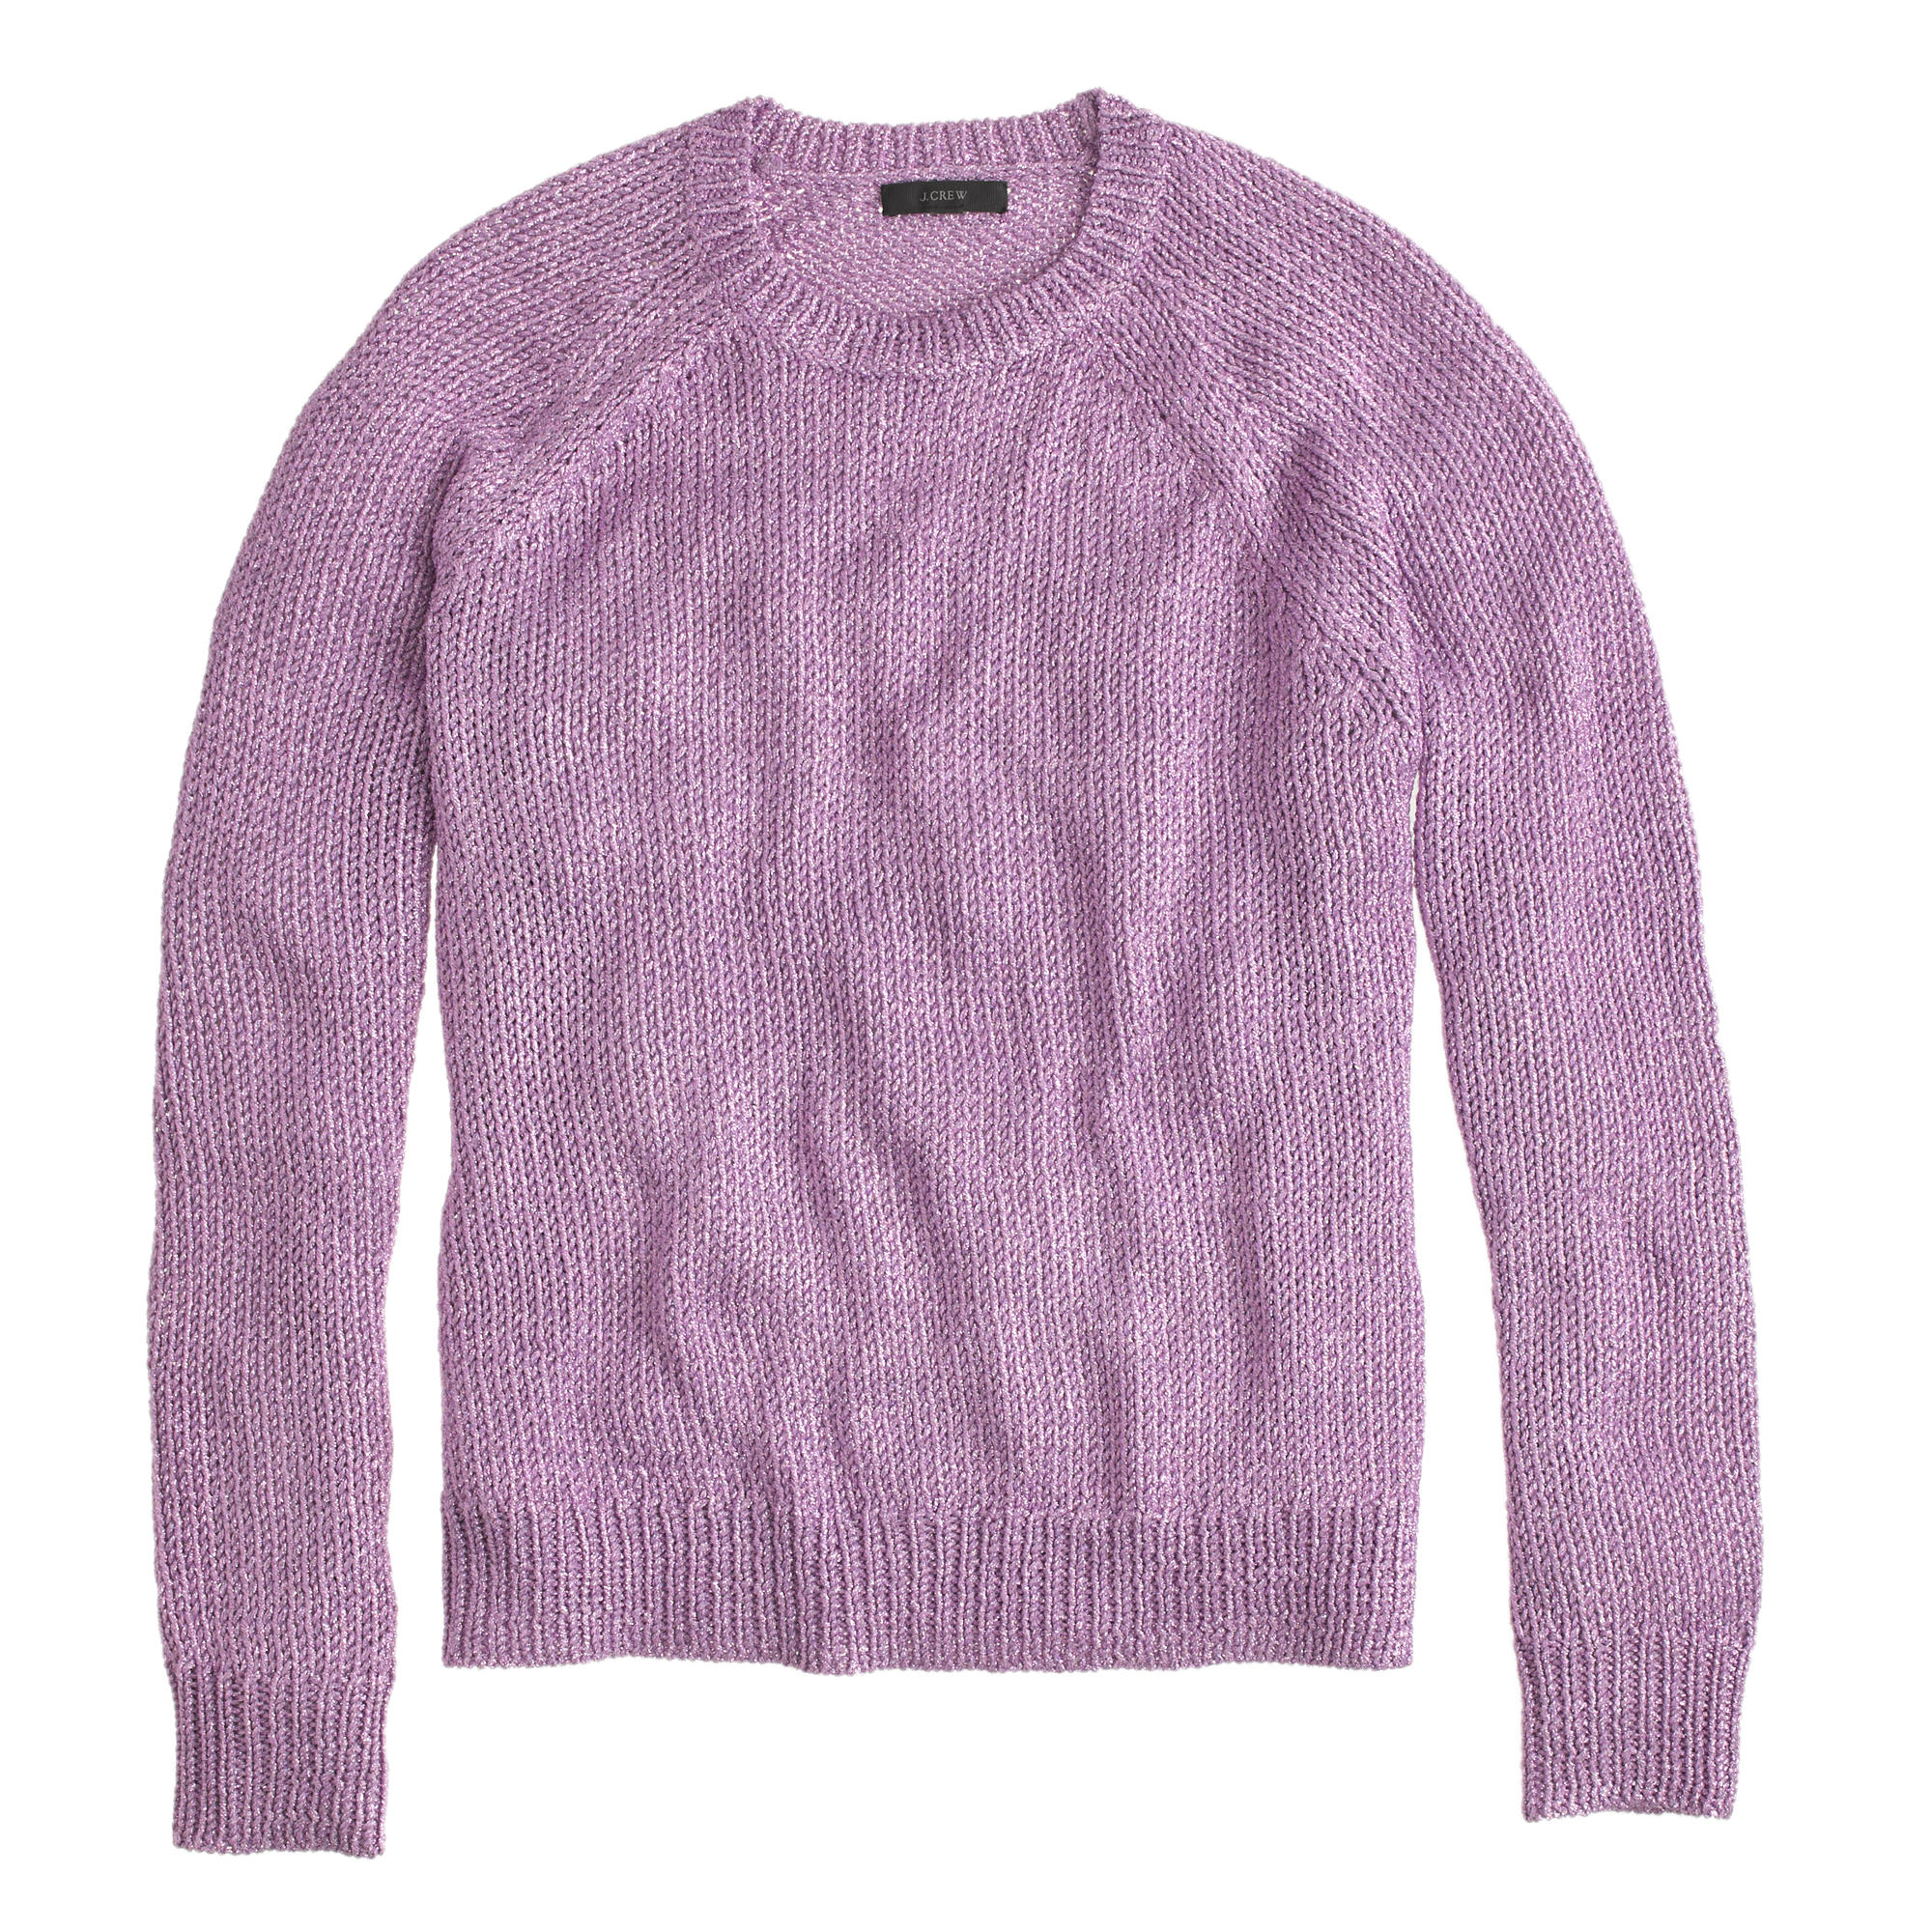 J.crew Metallic Side-slit Sweater in Purple | Lyst